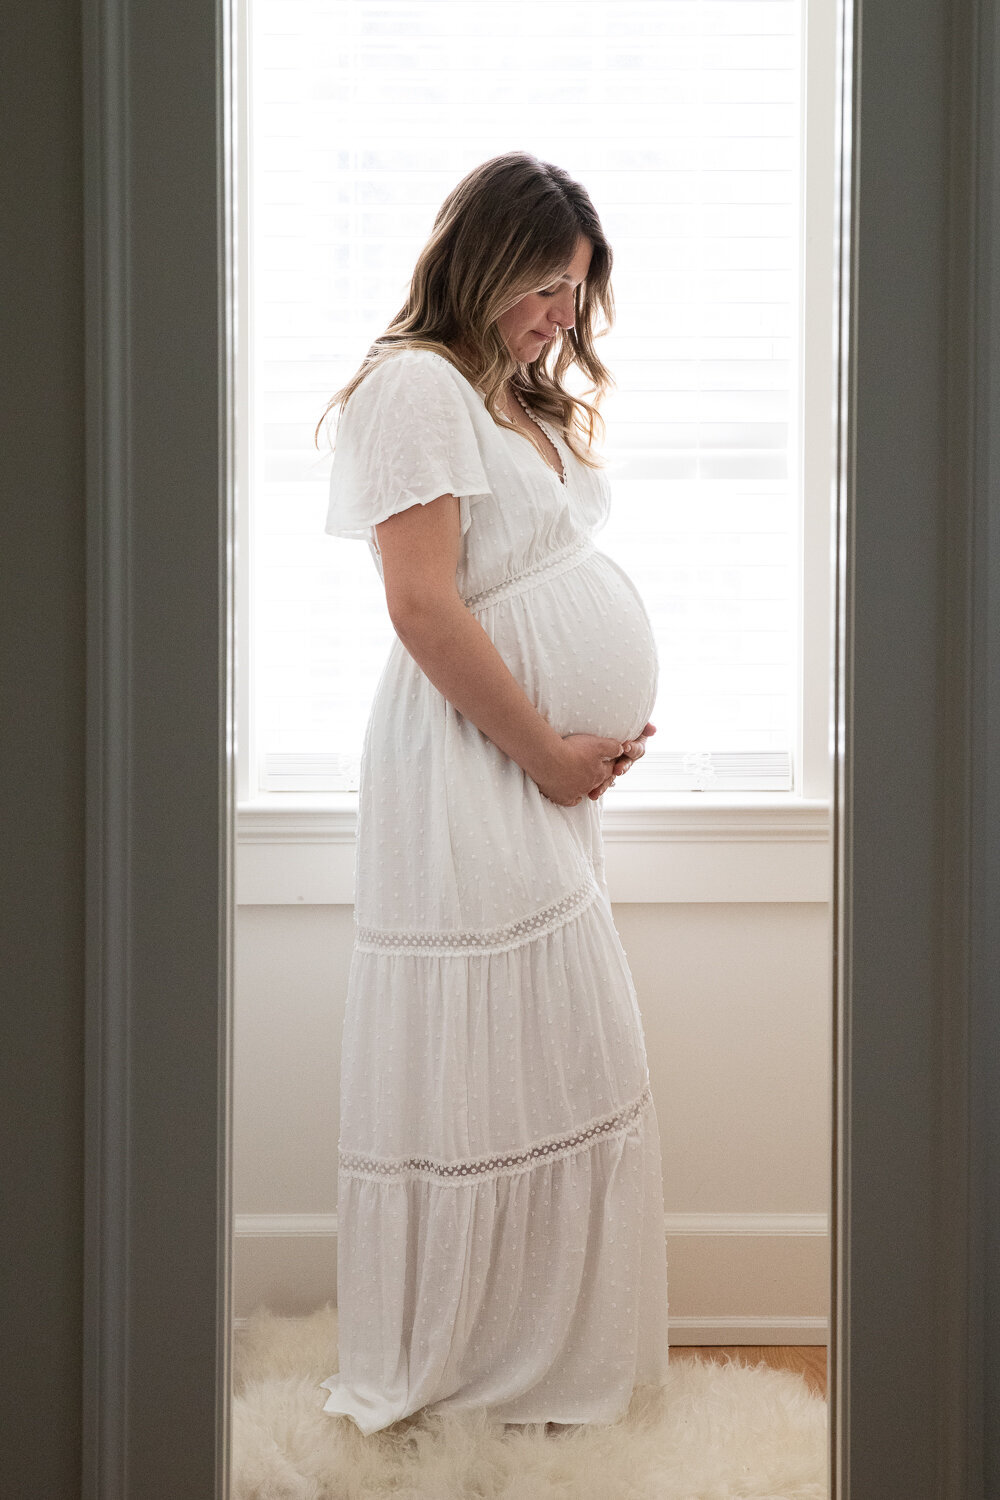 ny maternity photographer-1-3